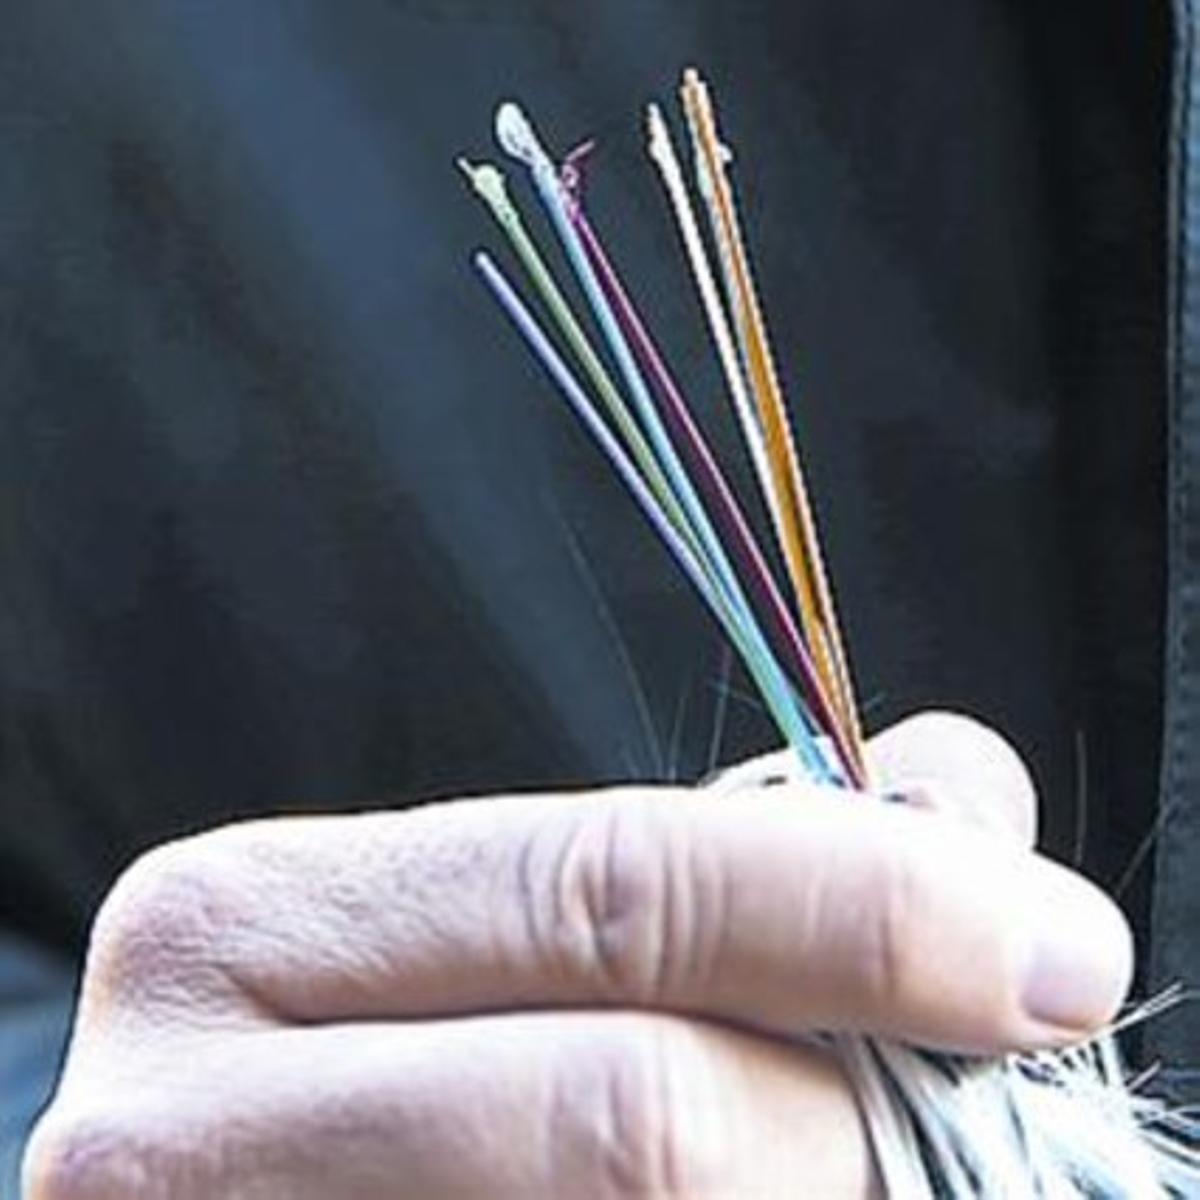 Detalle de la fibra óptica, cuyo grosor es de 0,1 milímetros.